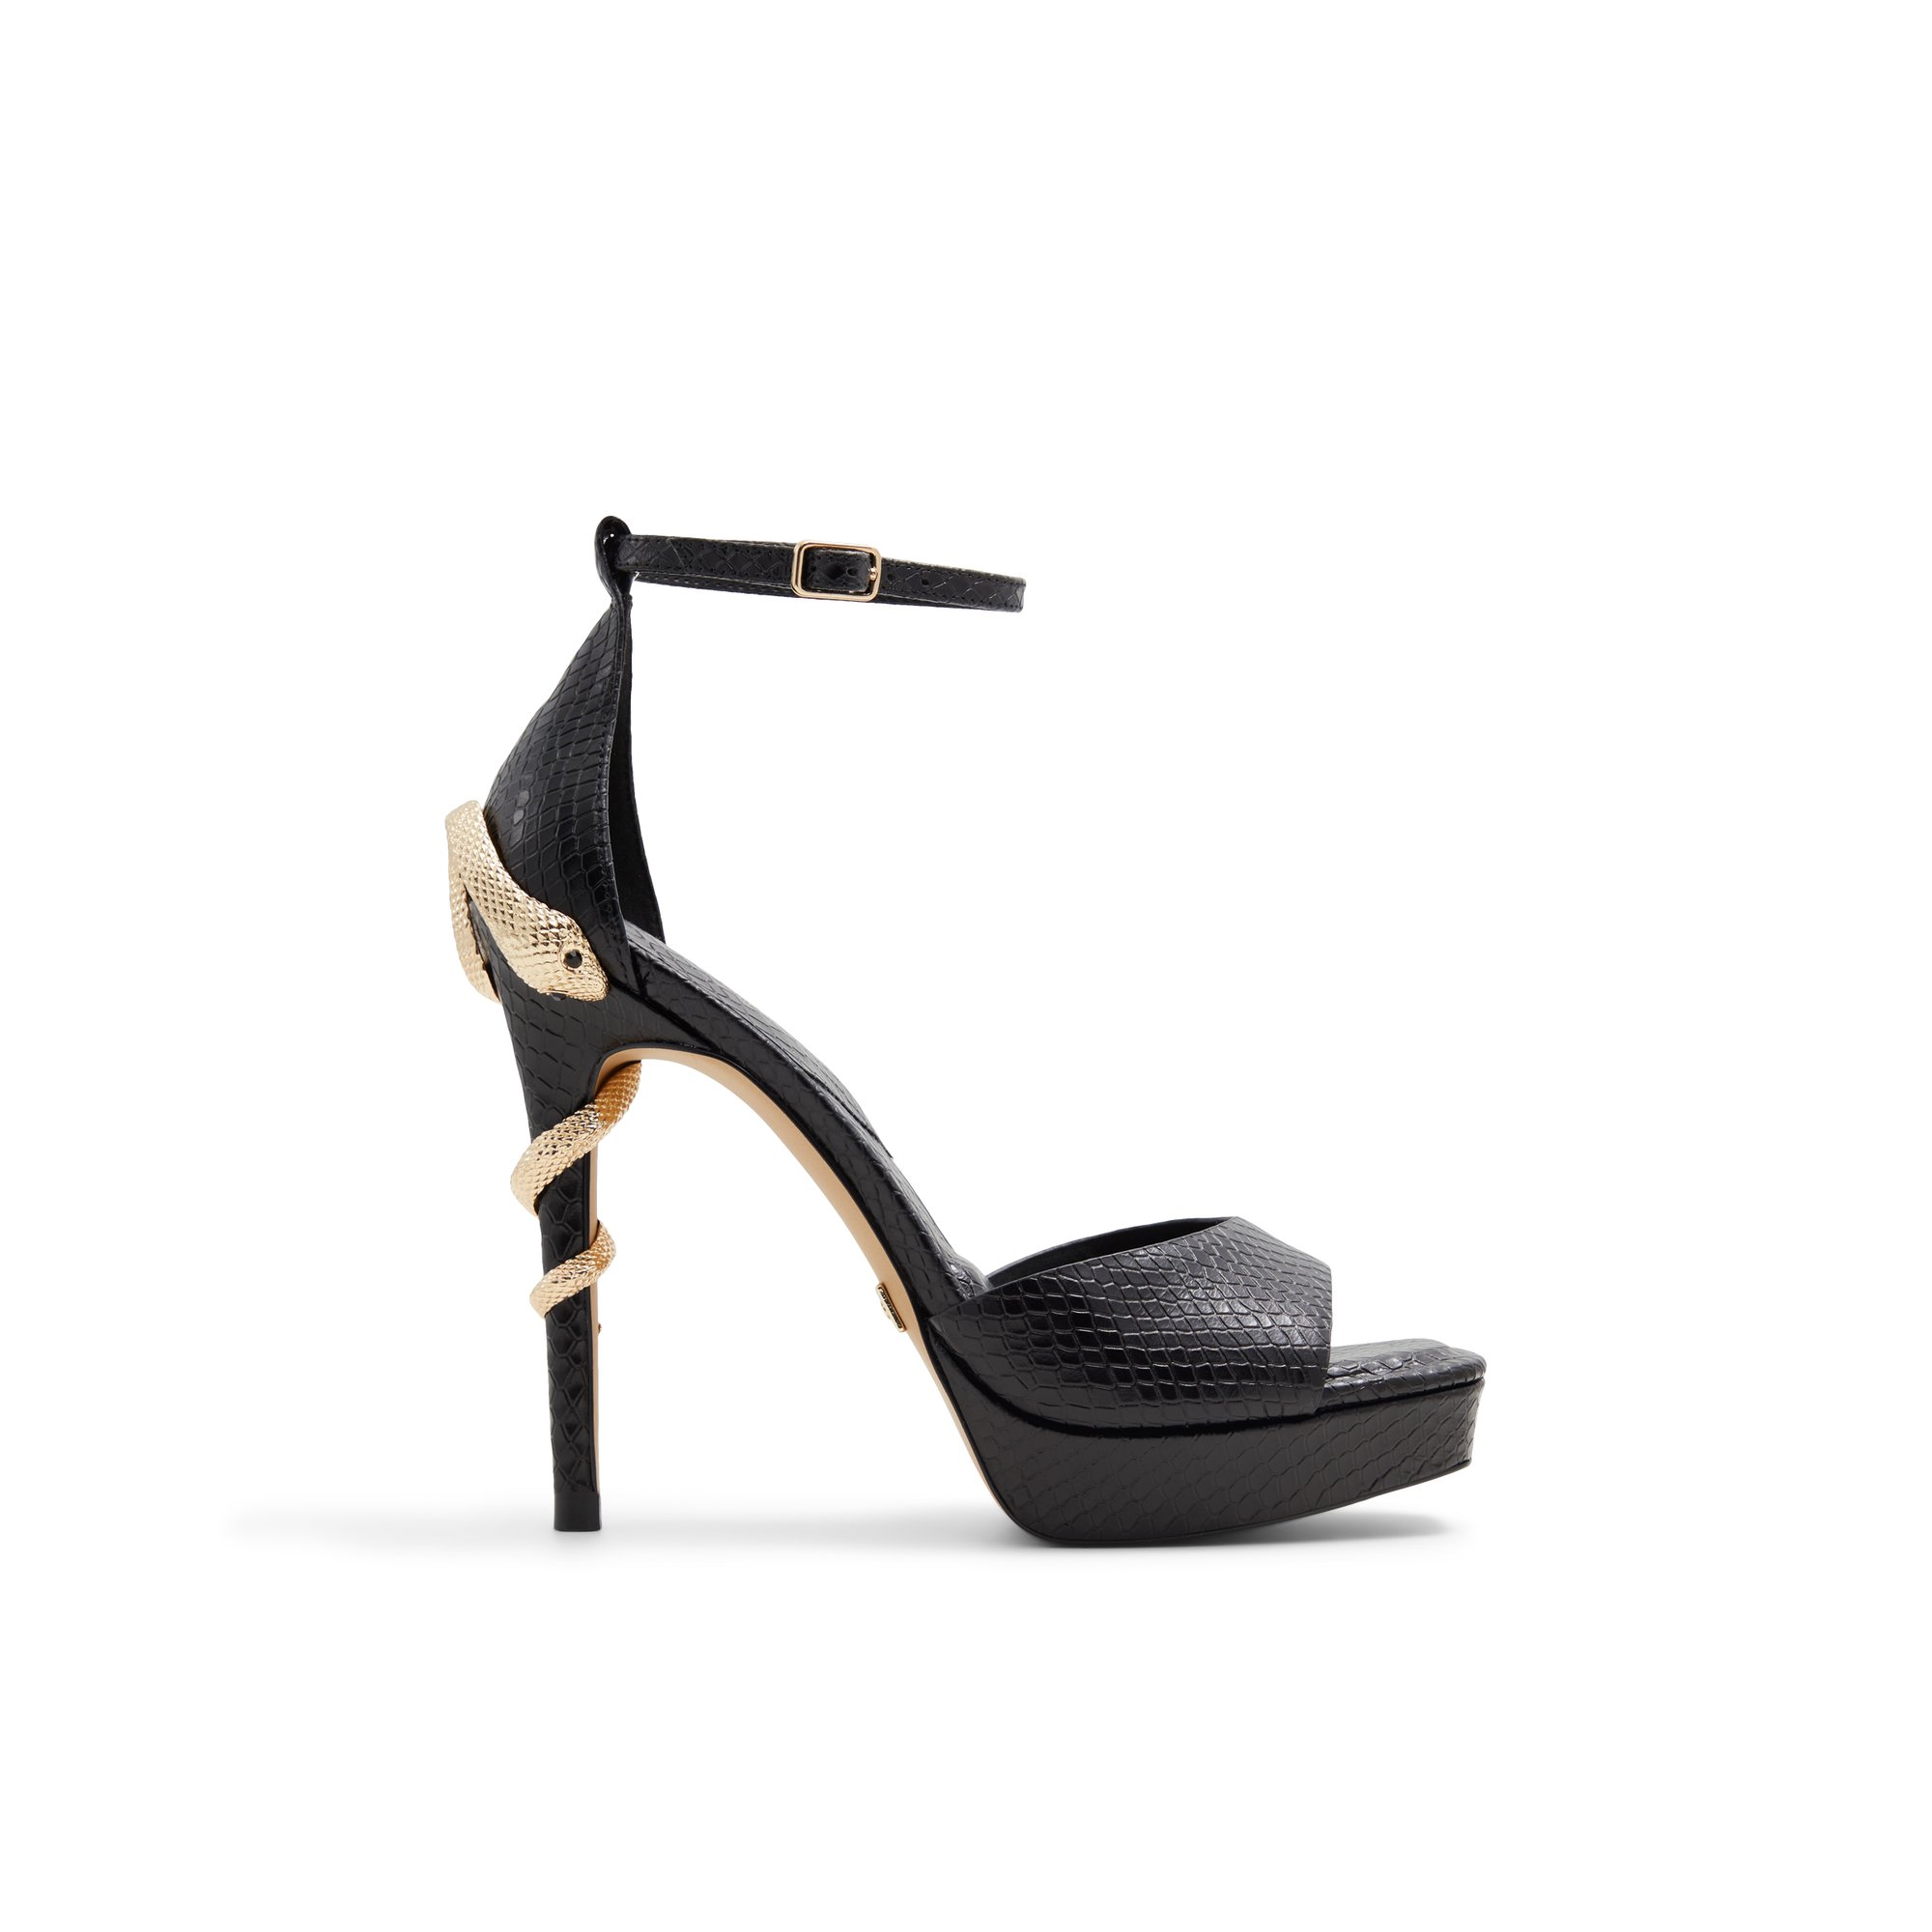 ALDO Medusa - Women's Strappy Sandal Sandals - Black